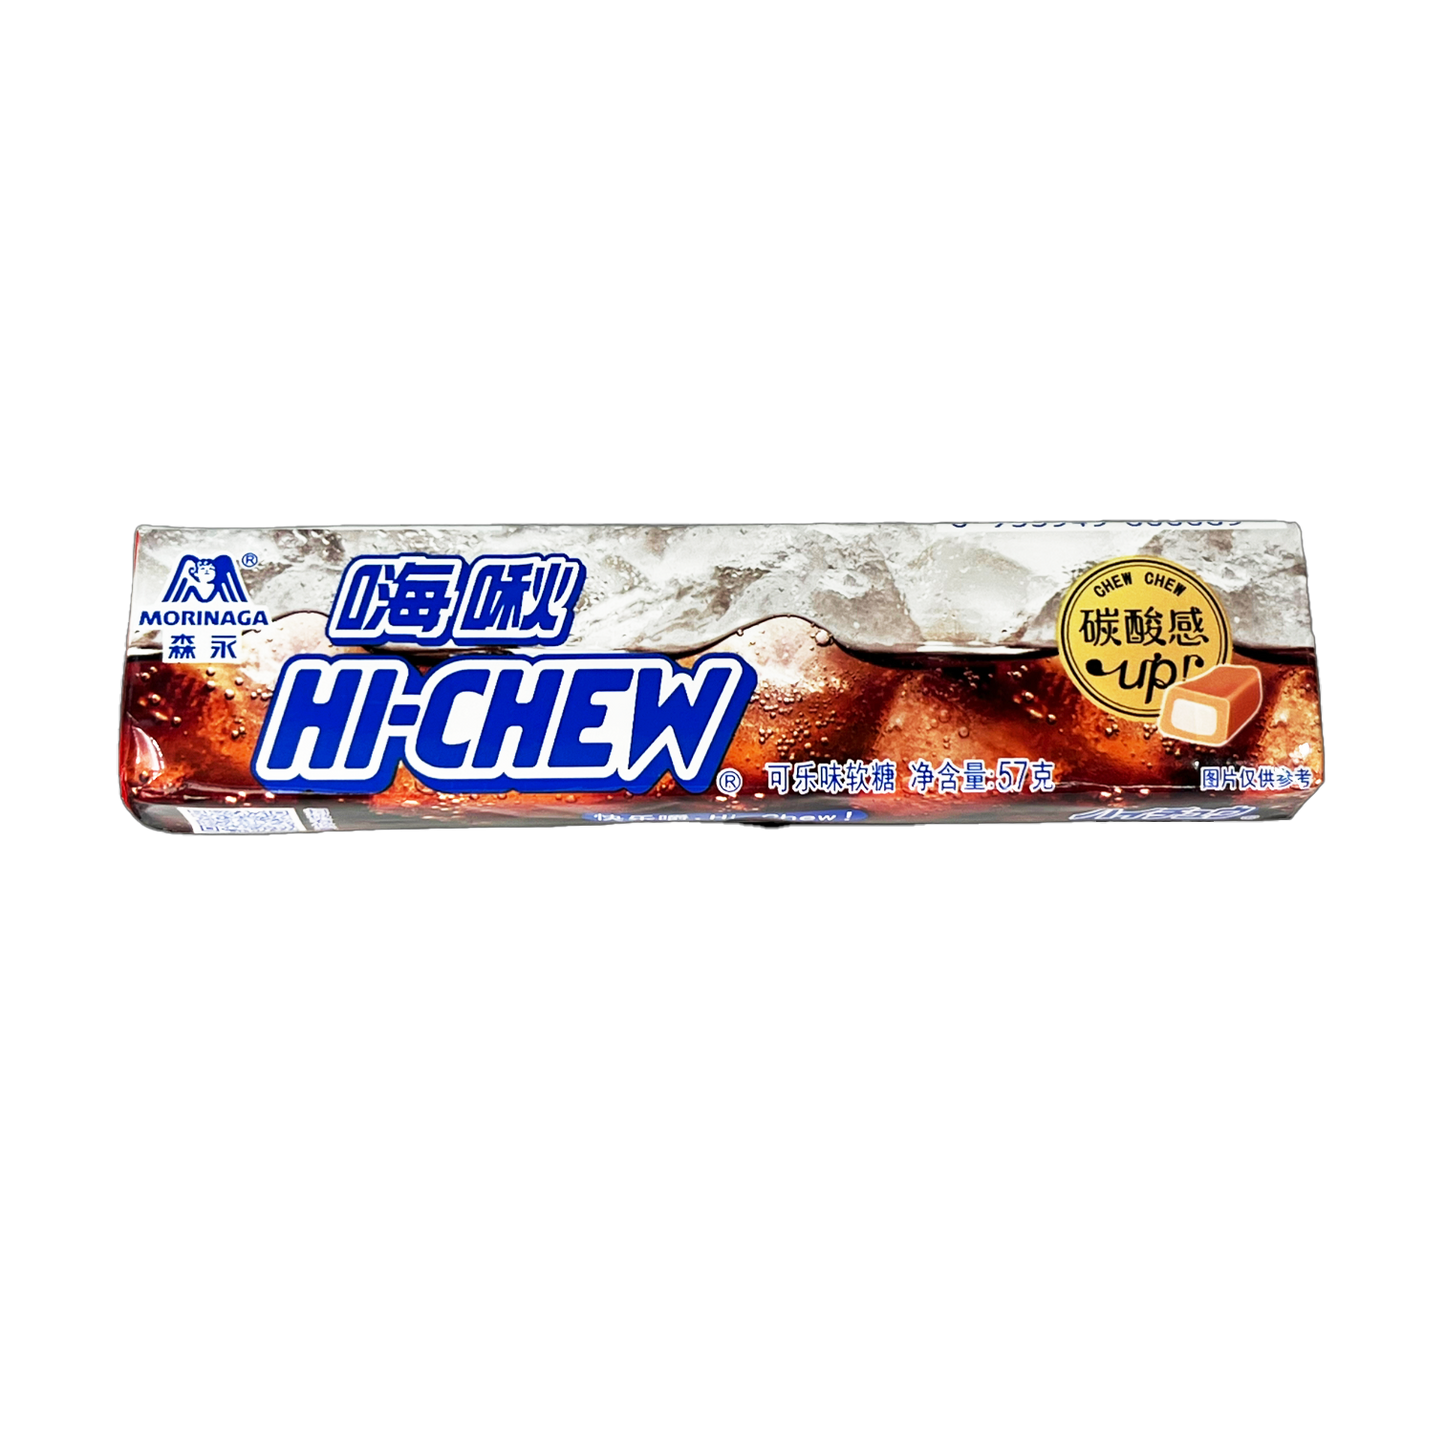 Hi-Chew 12ct box